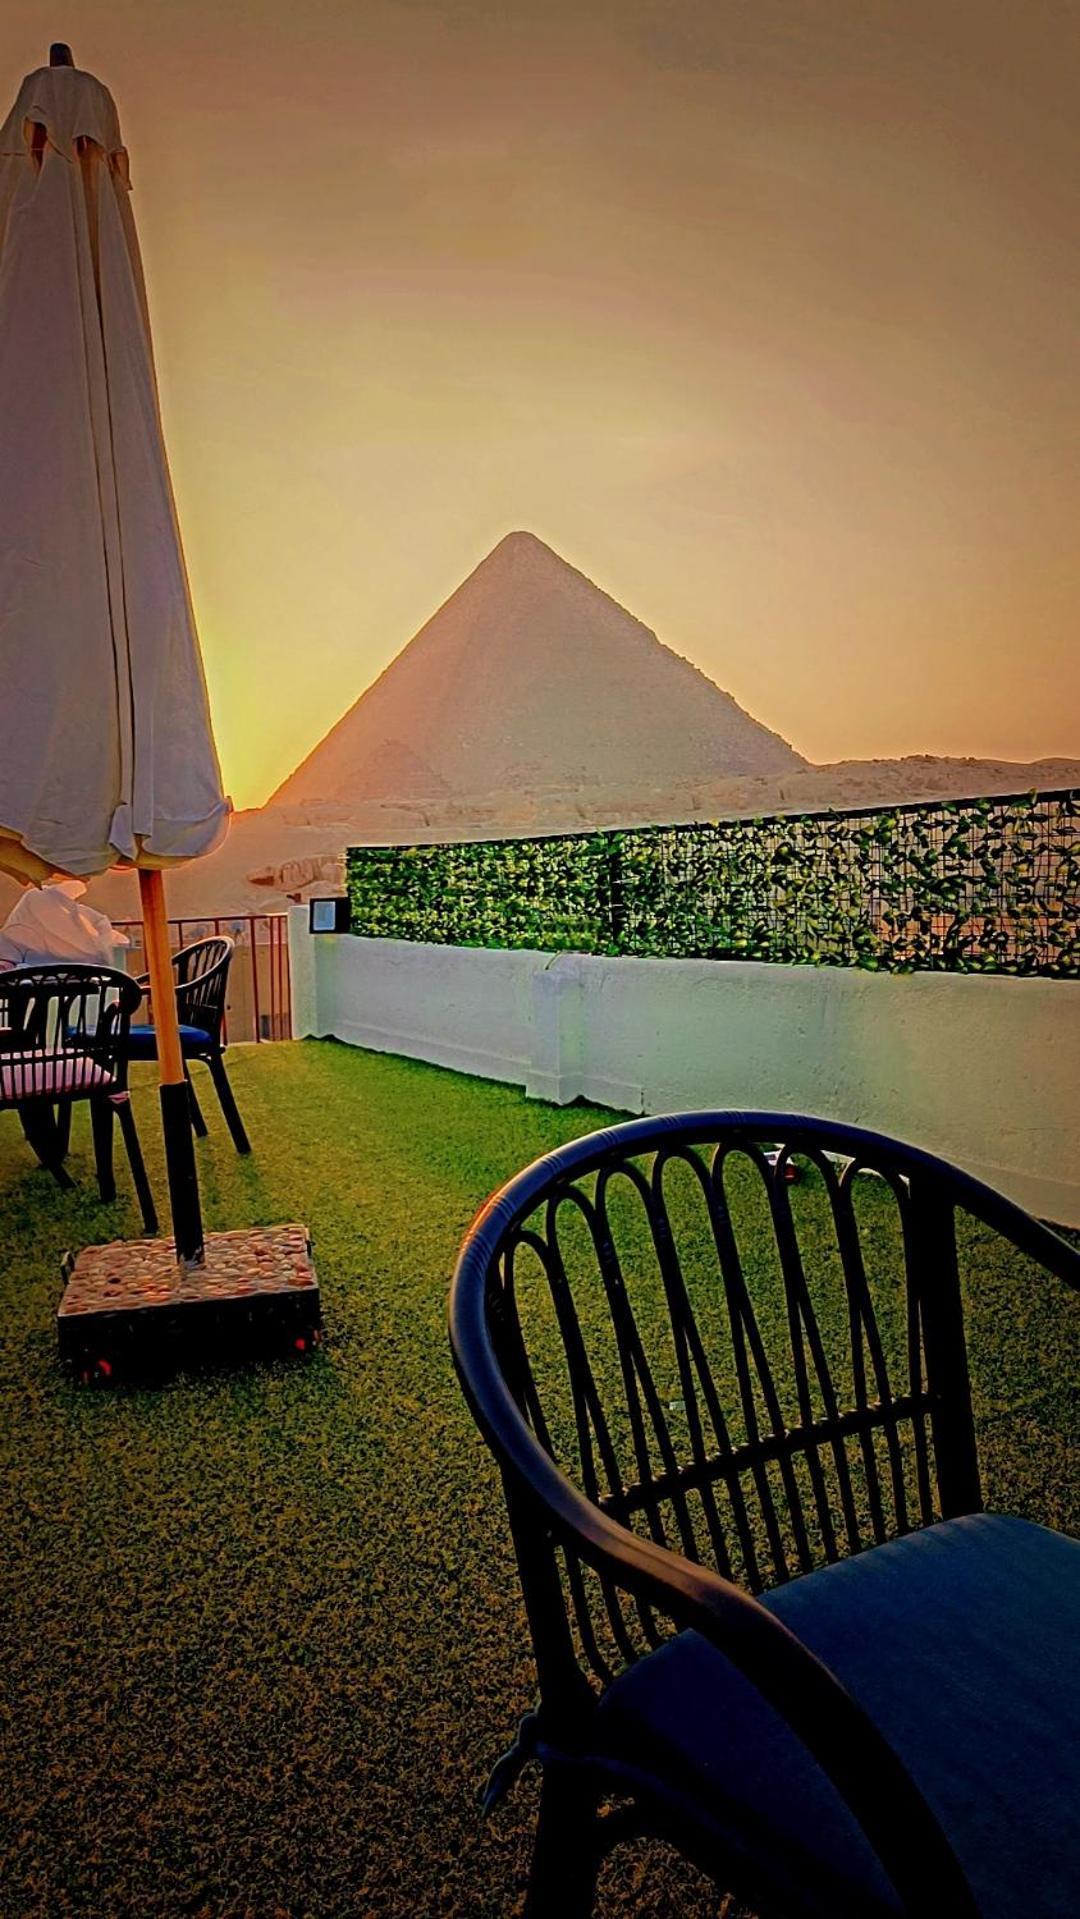 Solima Pyramids View 开罗 外观 照片